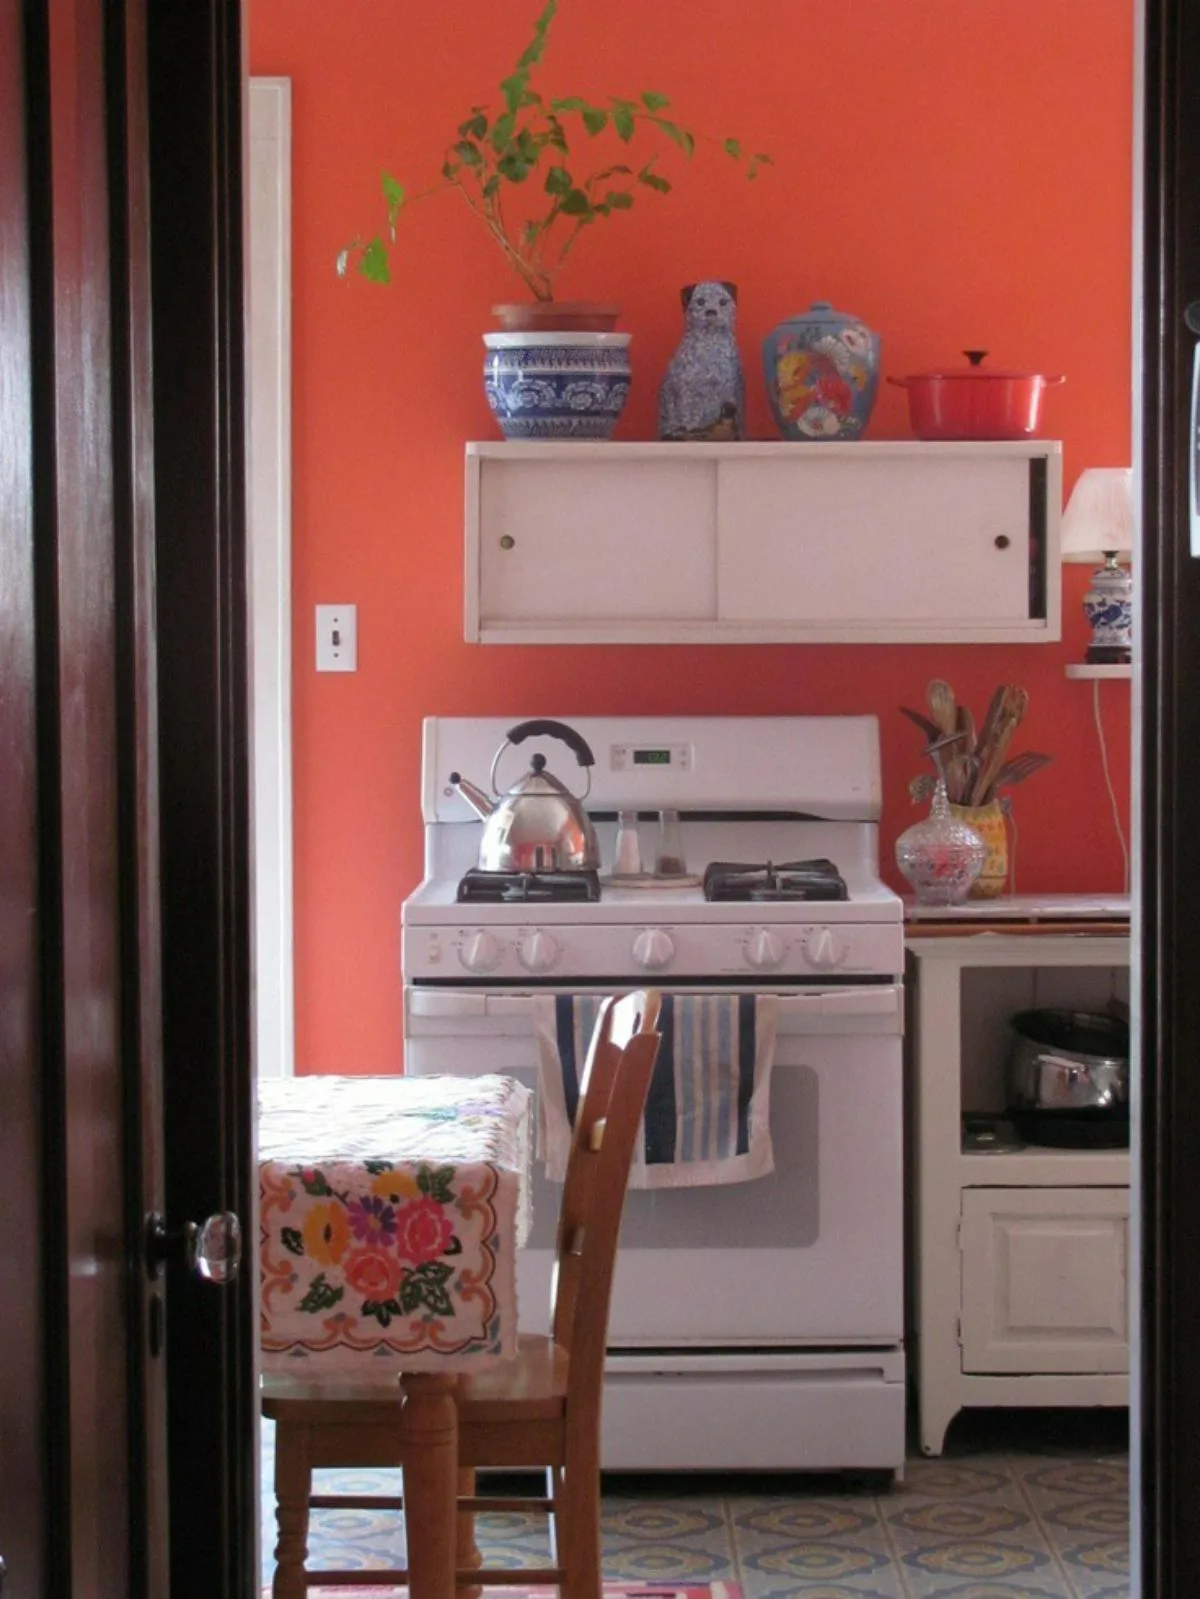 آشپزخانه با دیوار هلویی رنگ همراه با اجاق گاز و کابینت سفید